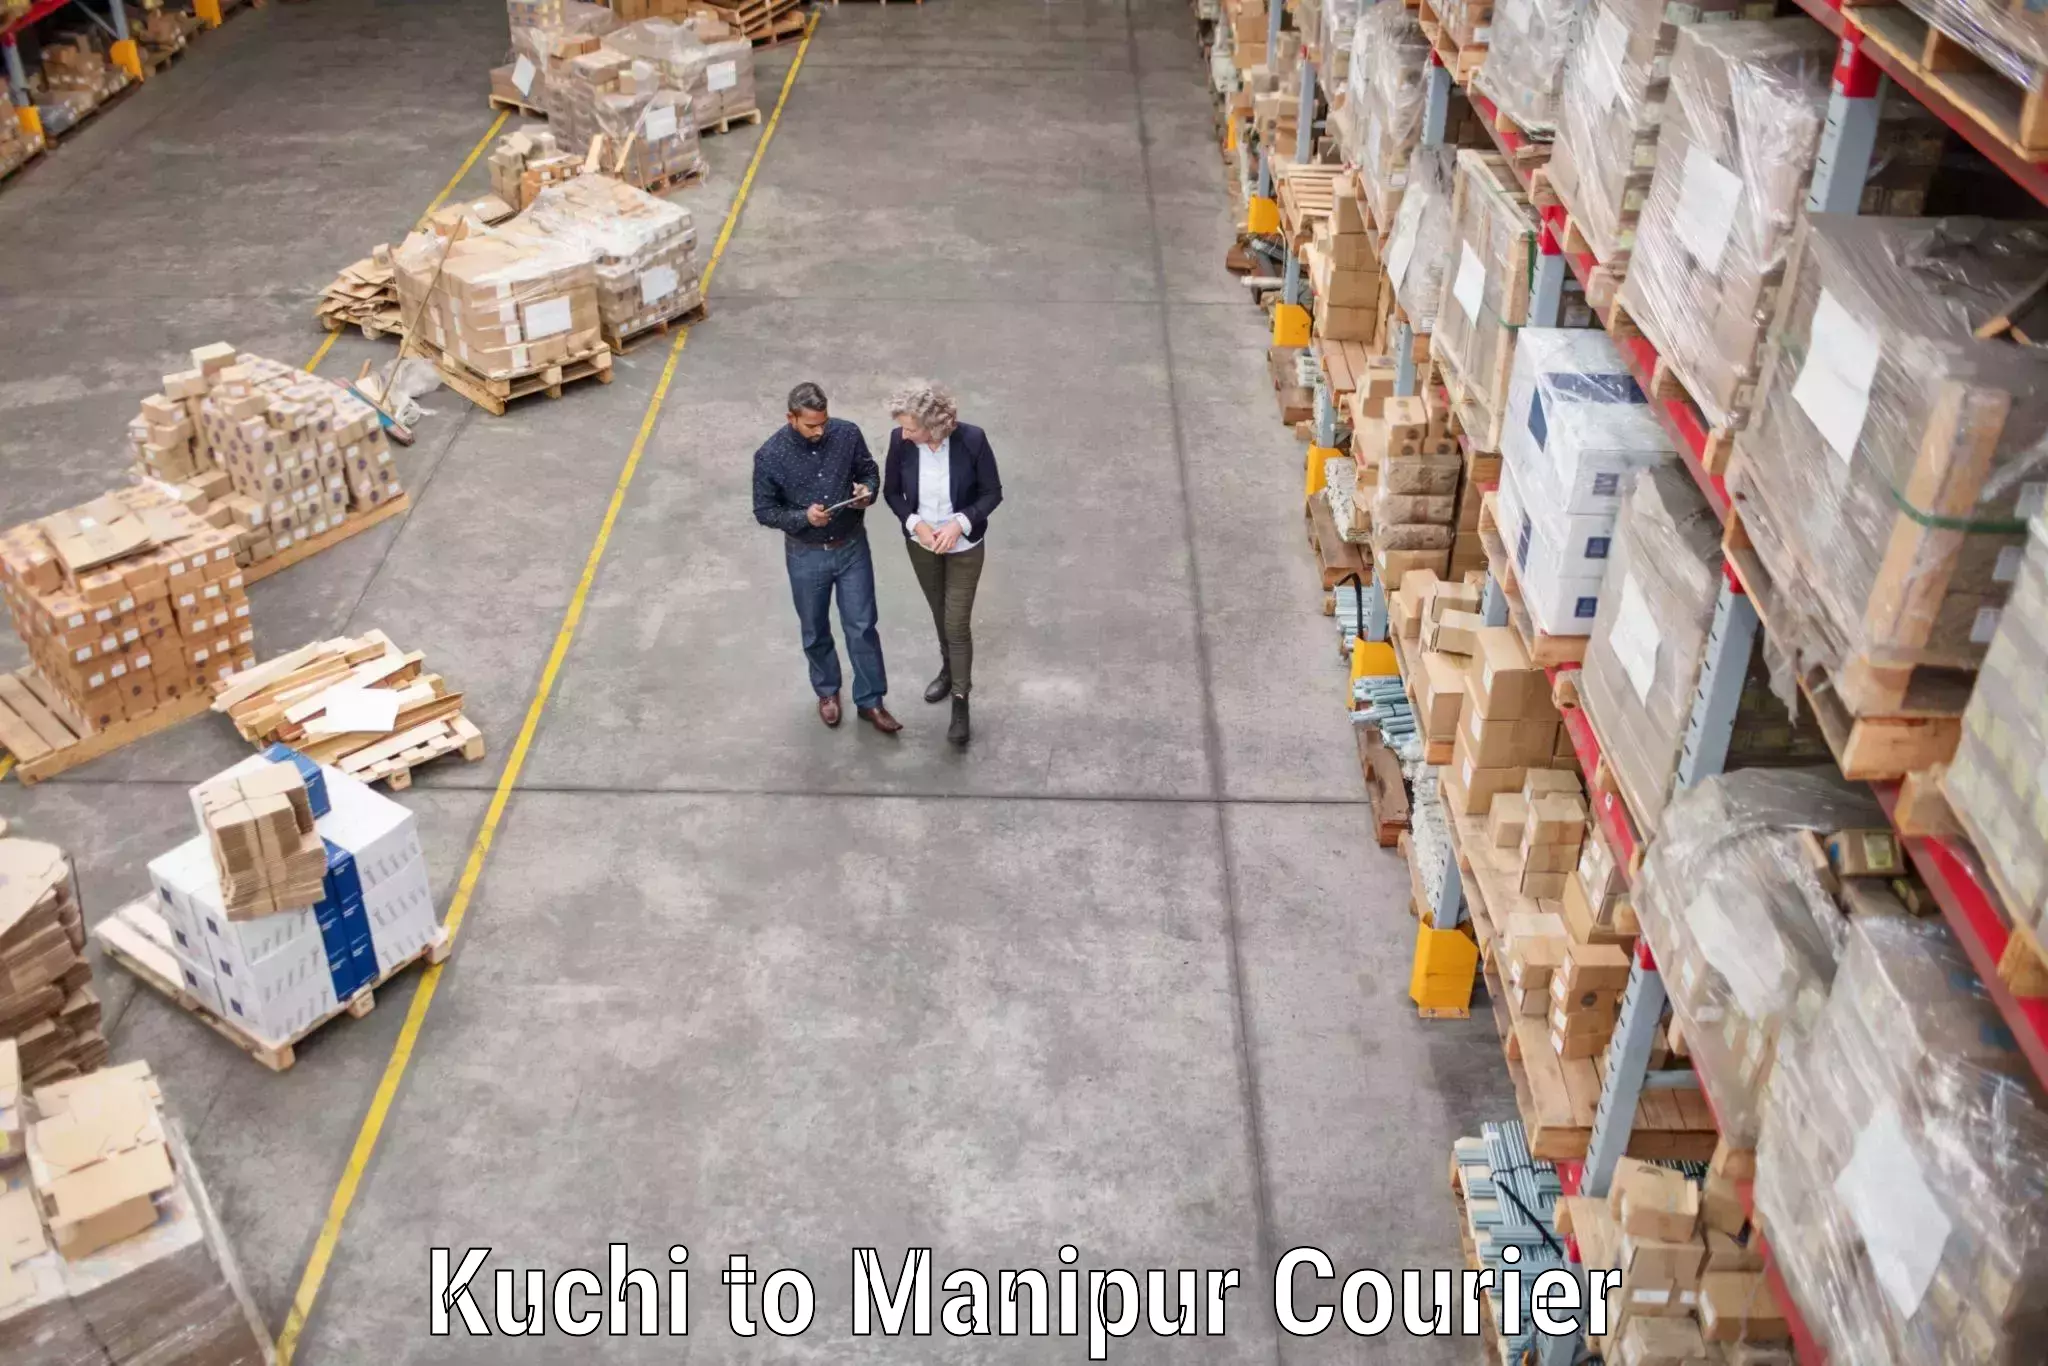 Furniture transport specialists Kuchi to Kaptipada